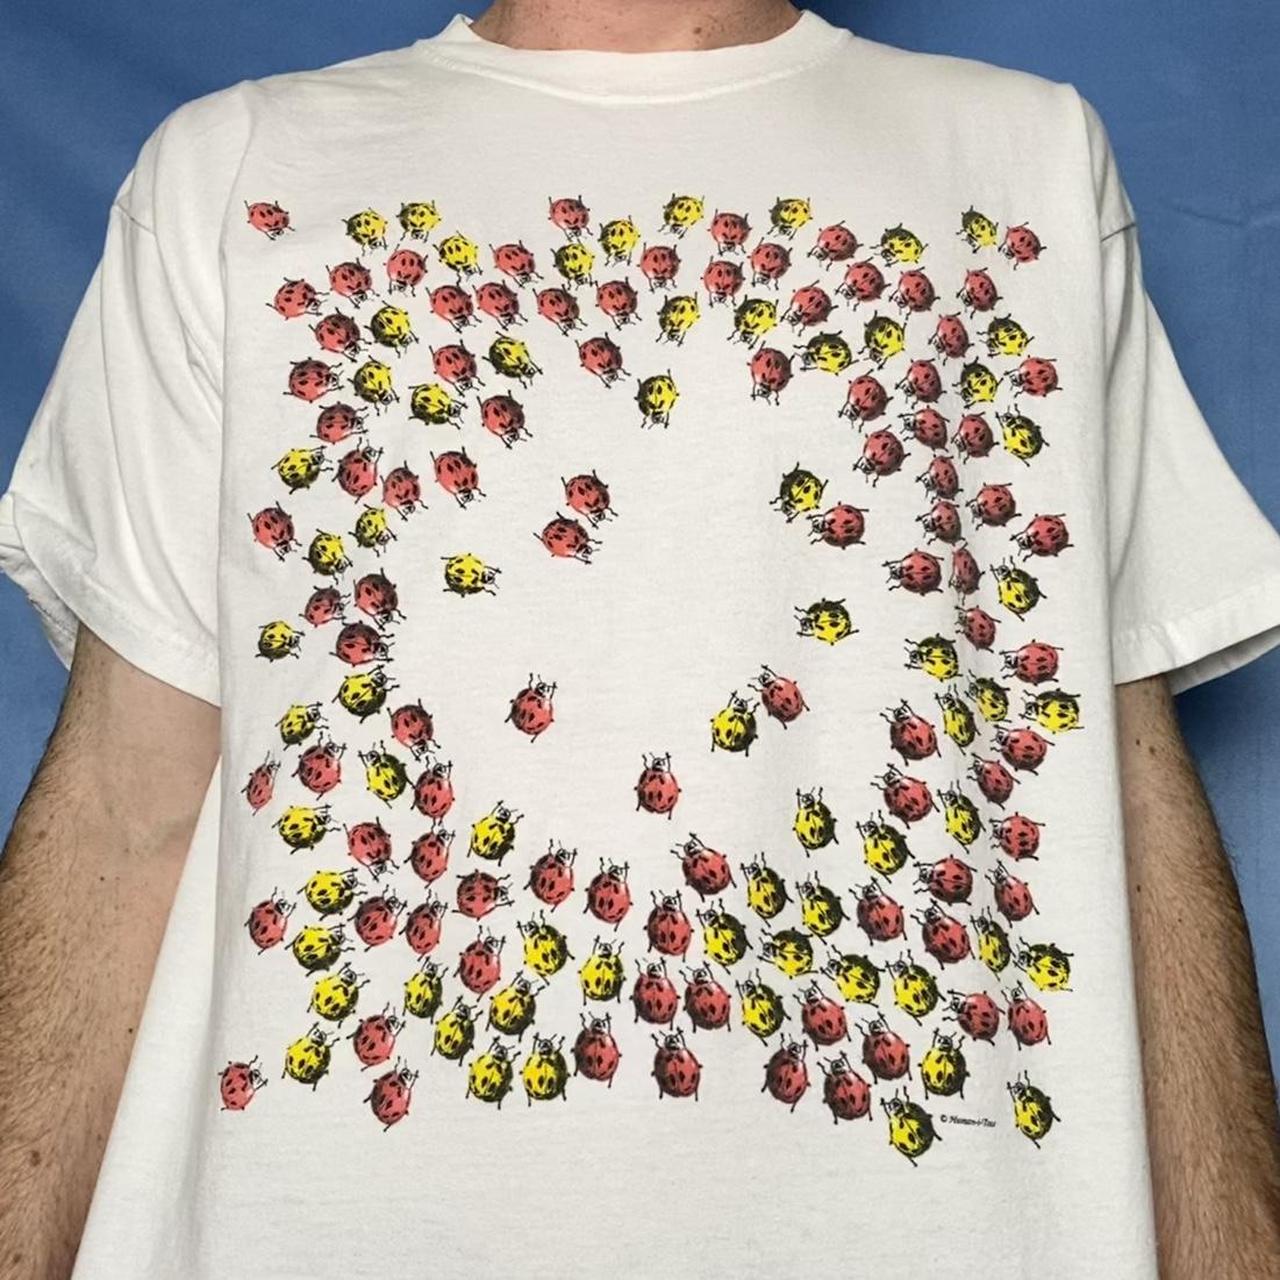 Product Image 1 - vintage nature bug t-shirt 

ladybugs